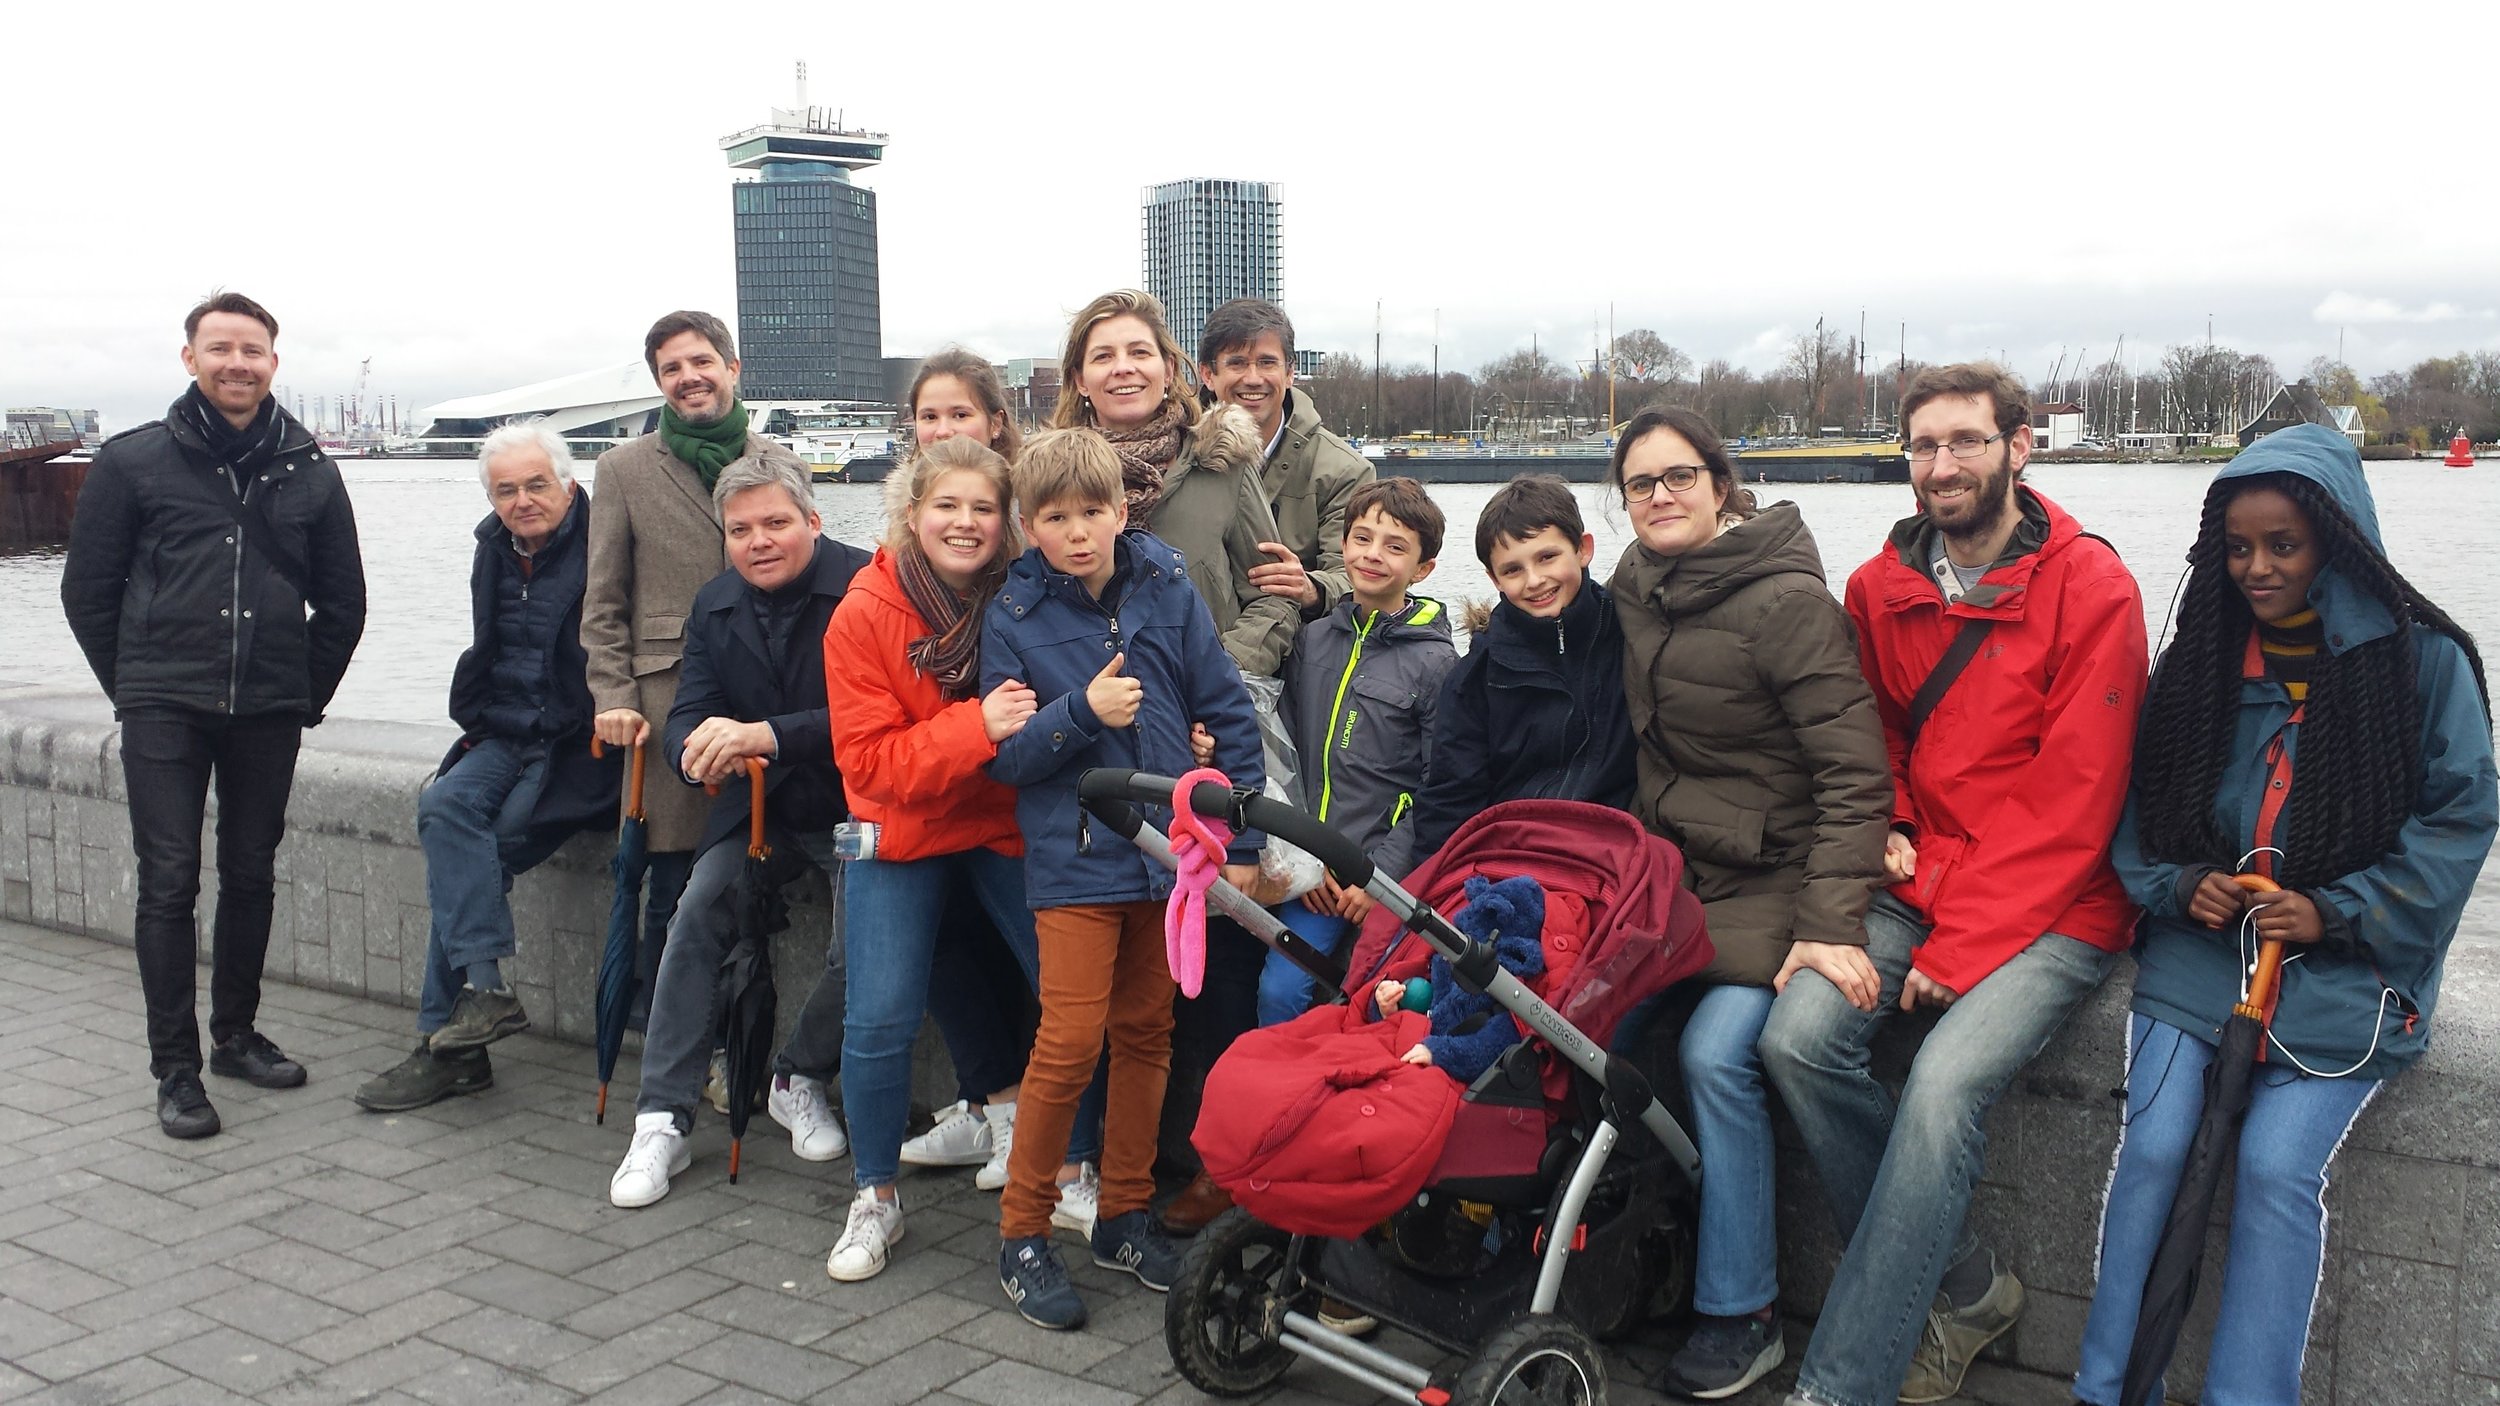 Belgian family